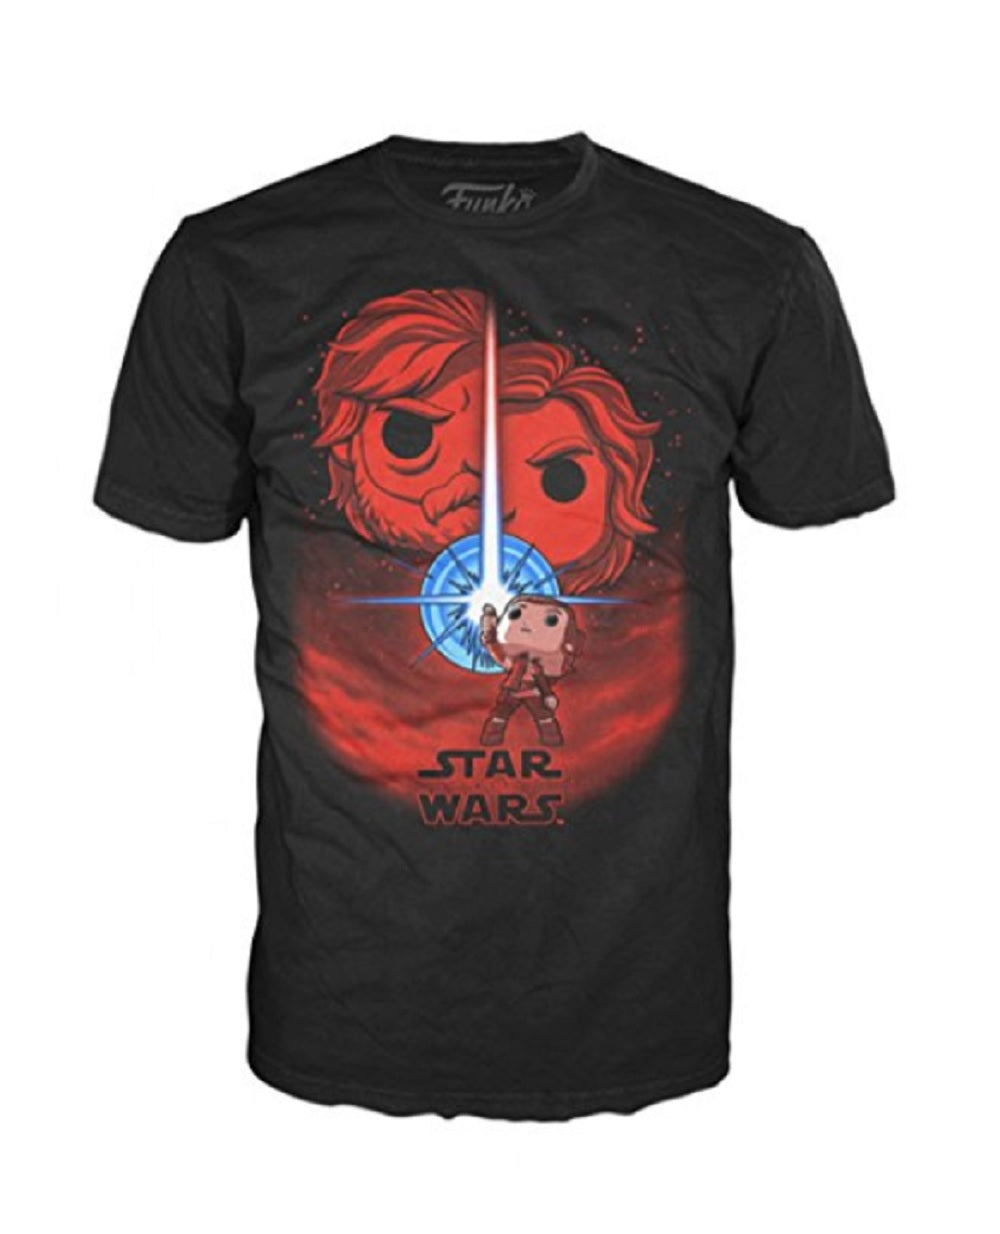 Funko Pop Tees: Star Wars The Last Jedi Poster Adult T-Shirt